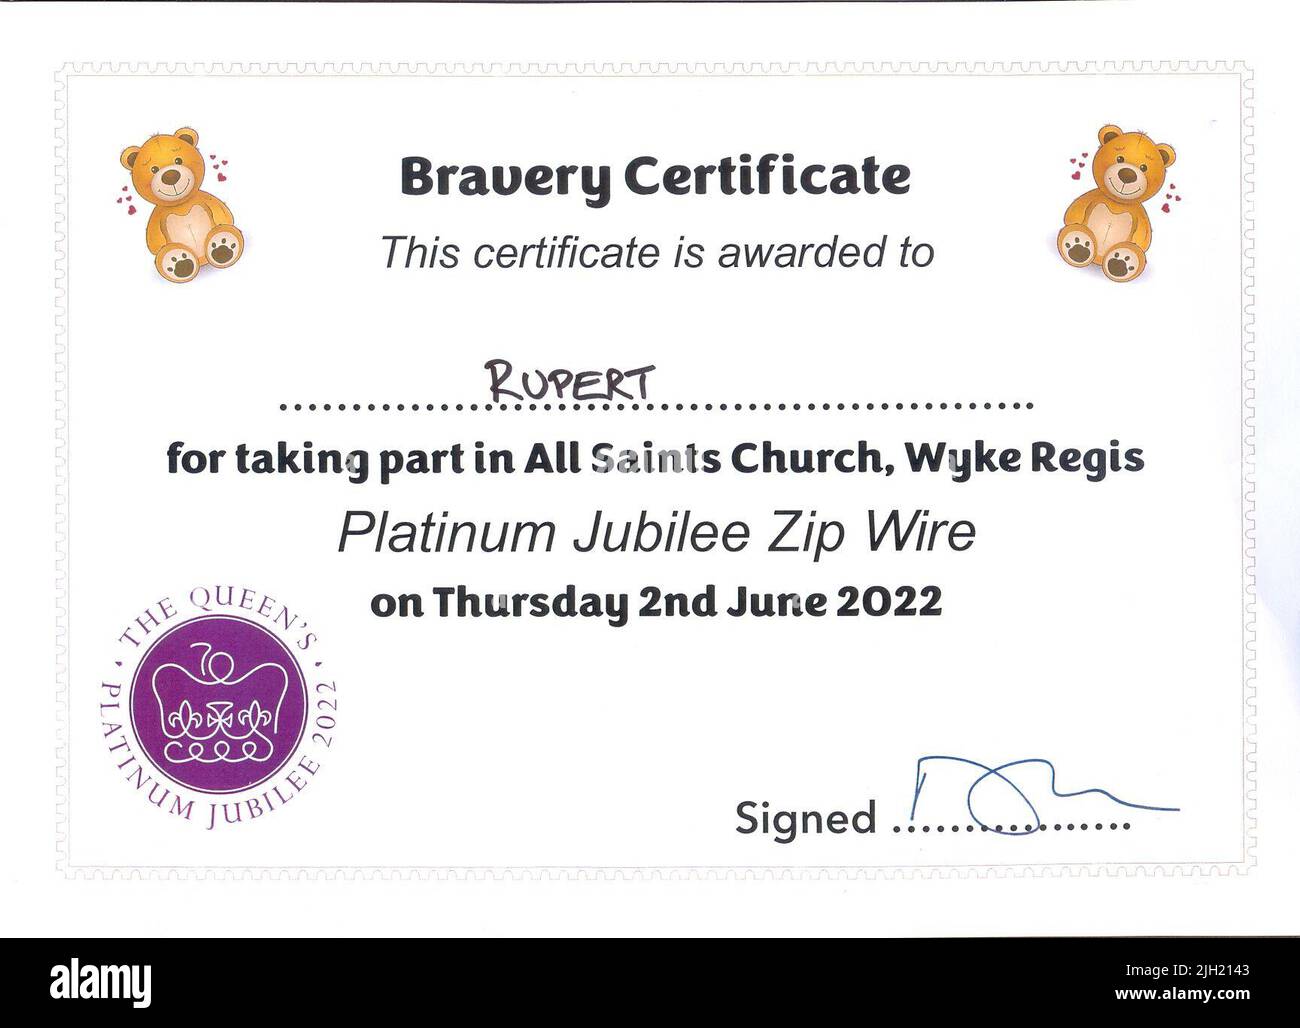 Certificat de bravoure pour une balade à l'ours en peluche à bord d'une tyrolienne pour la célébration du Jubilé de platine le 2nd juin 2022 Banque D'Images